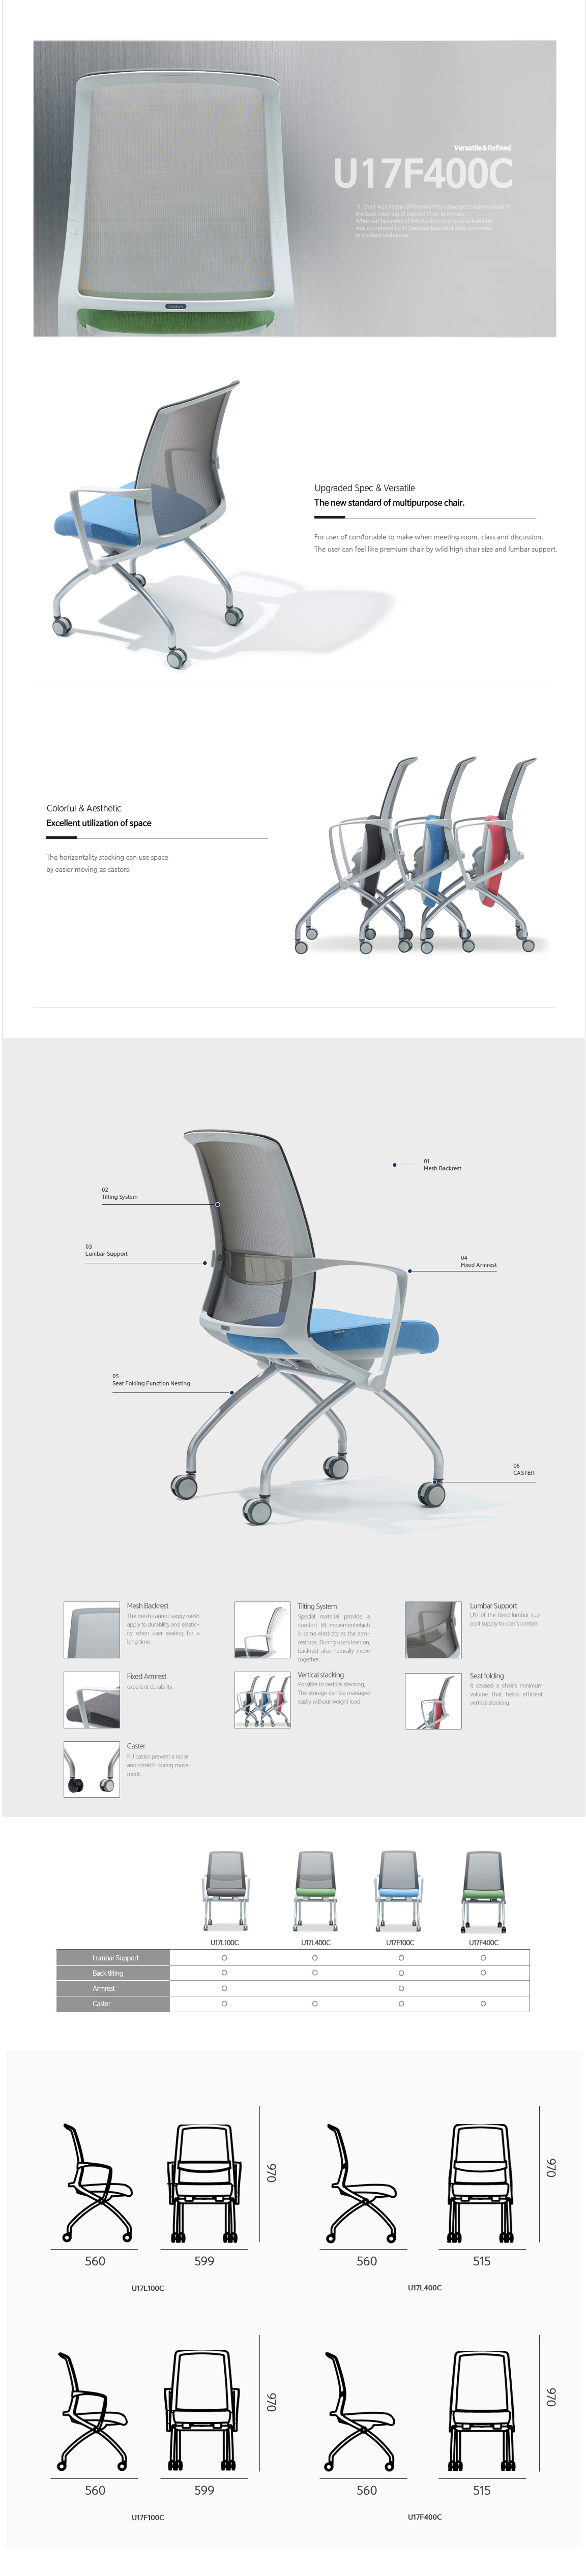 Luxdezine Multipurpose Chairs U17F400C